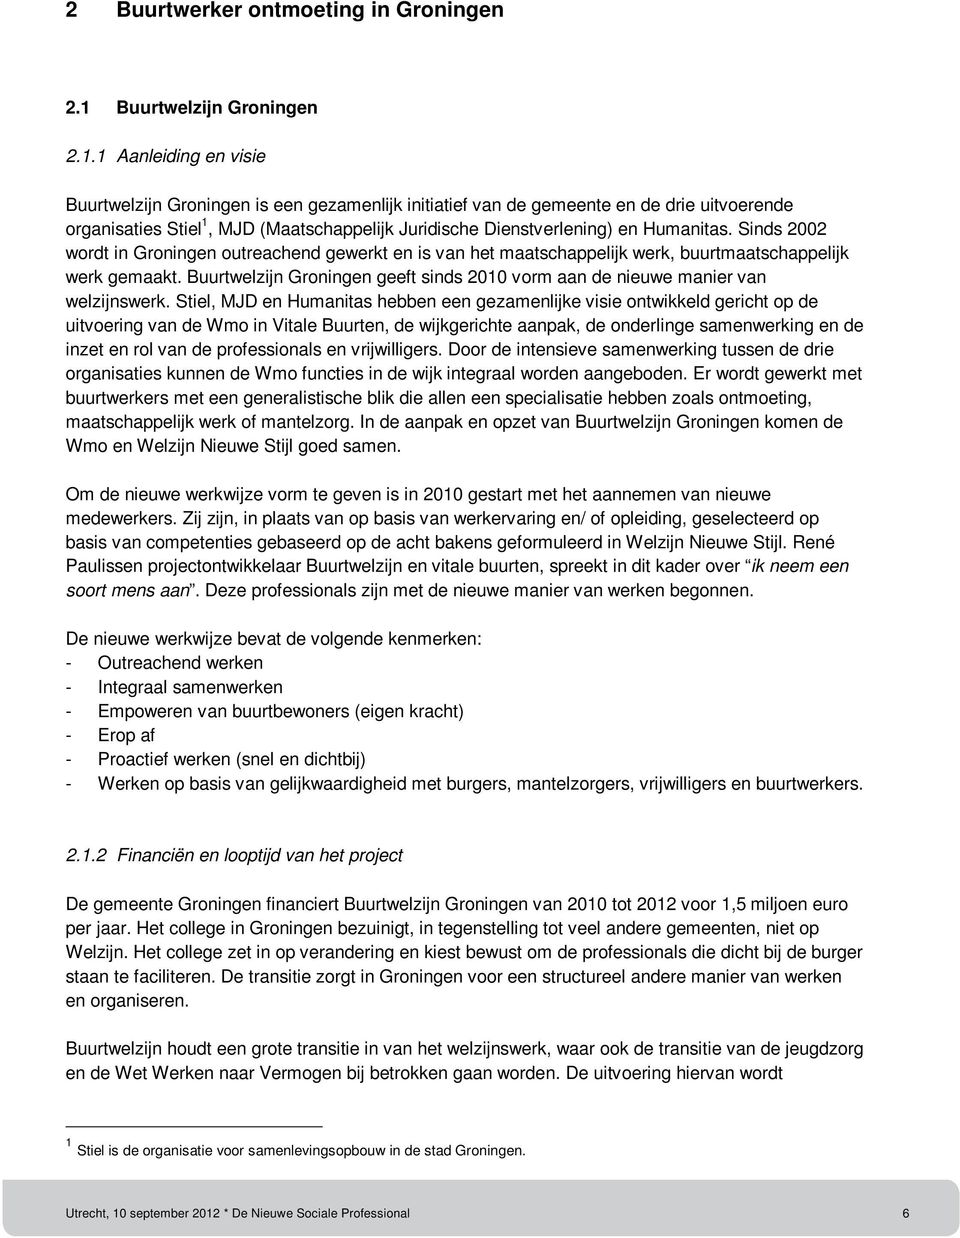 1 Aanleiding en visie Buurtwelzijn Groningen is een gezamenlijk initiatief van de gemeente en de drie uitvoerende organisaties Stiel 1, MJD (Maatschappelijk Juridische Dienstverlening) en Humanitas.